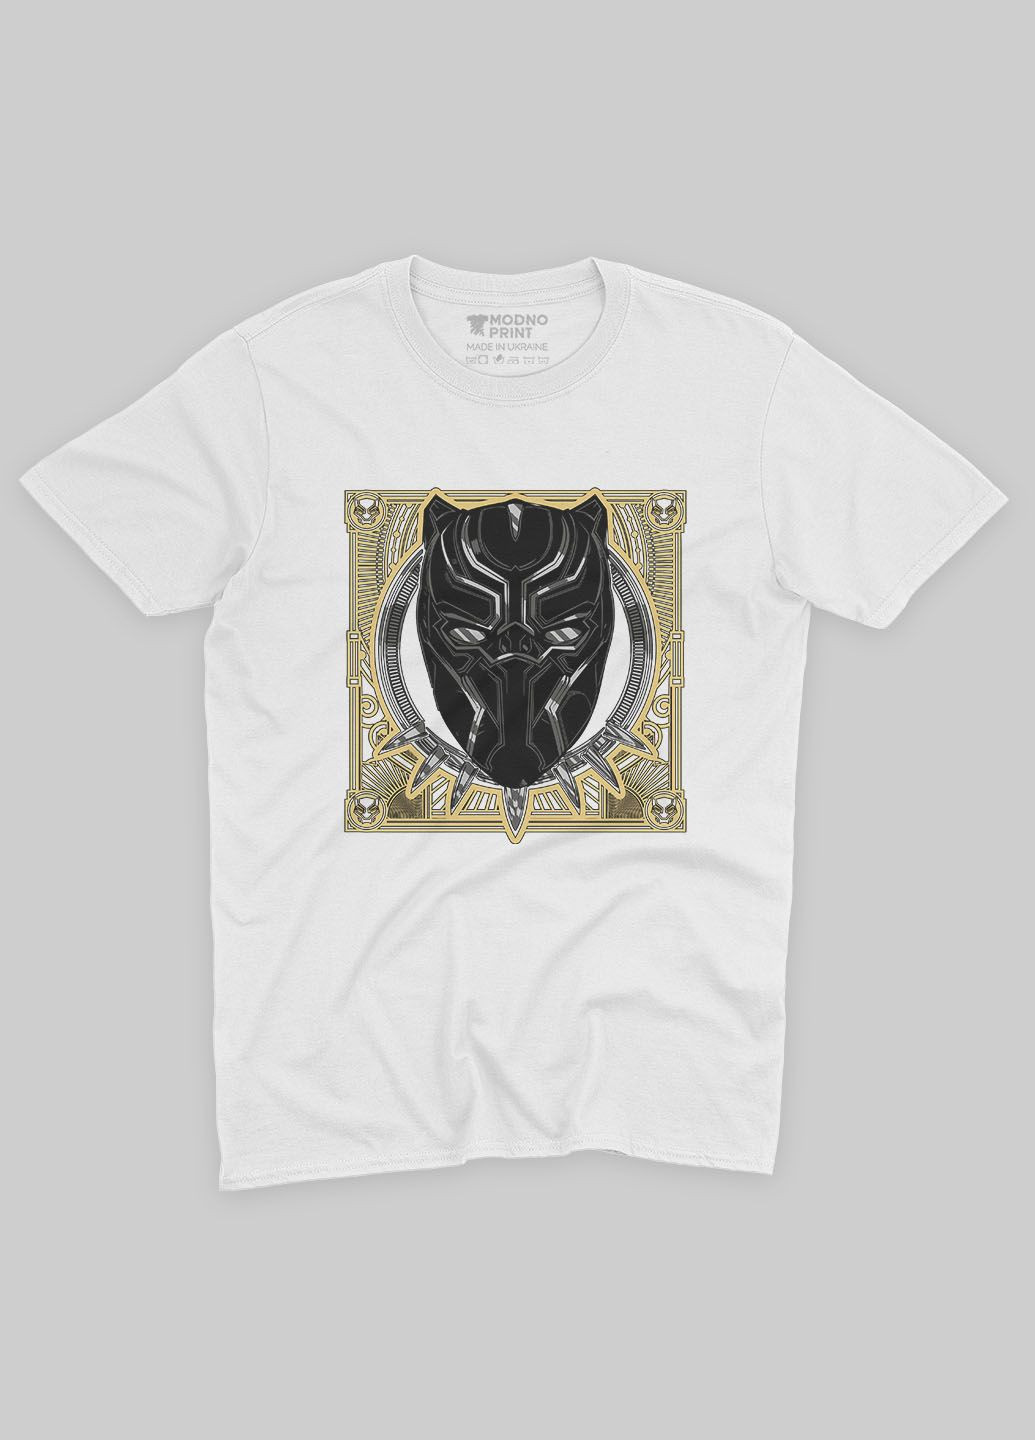 Біла демісезонна футболка для хлопчика з принтом супергероя - чорна пантера (ts001-1-whi-006-027-003-b) Modno